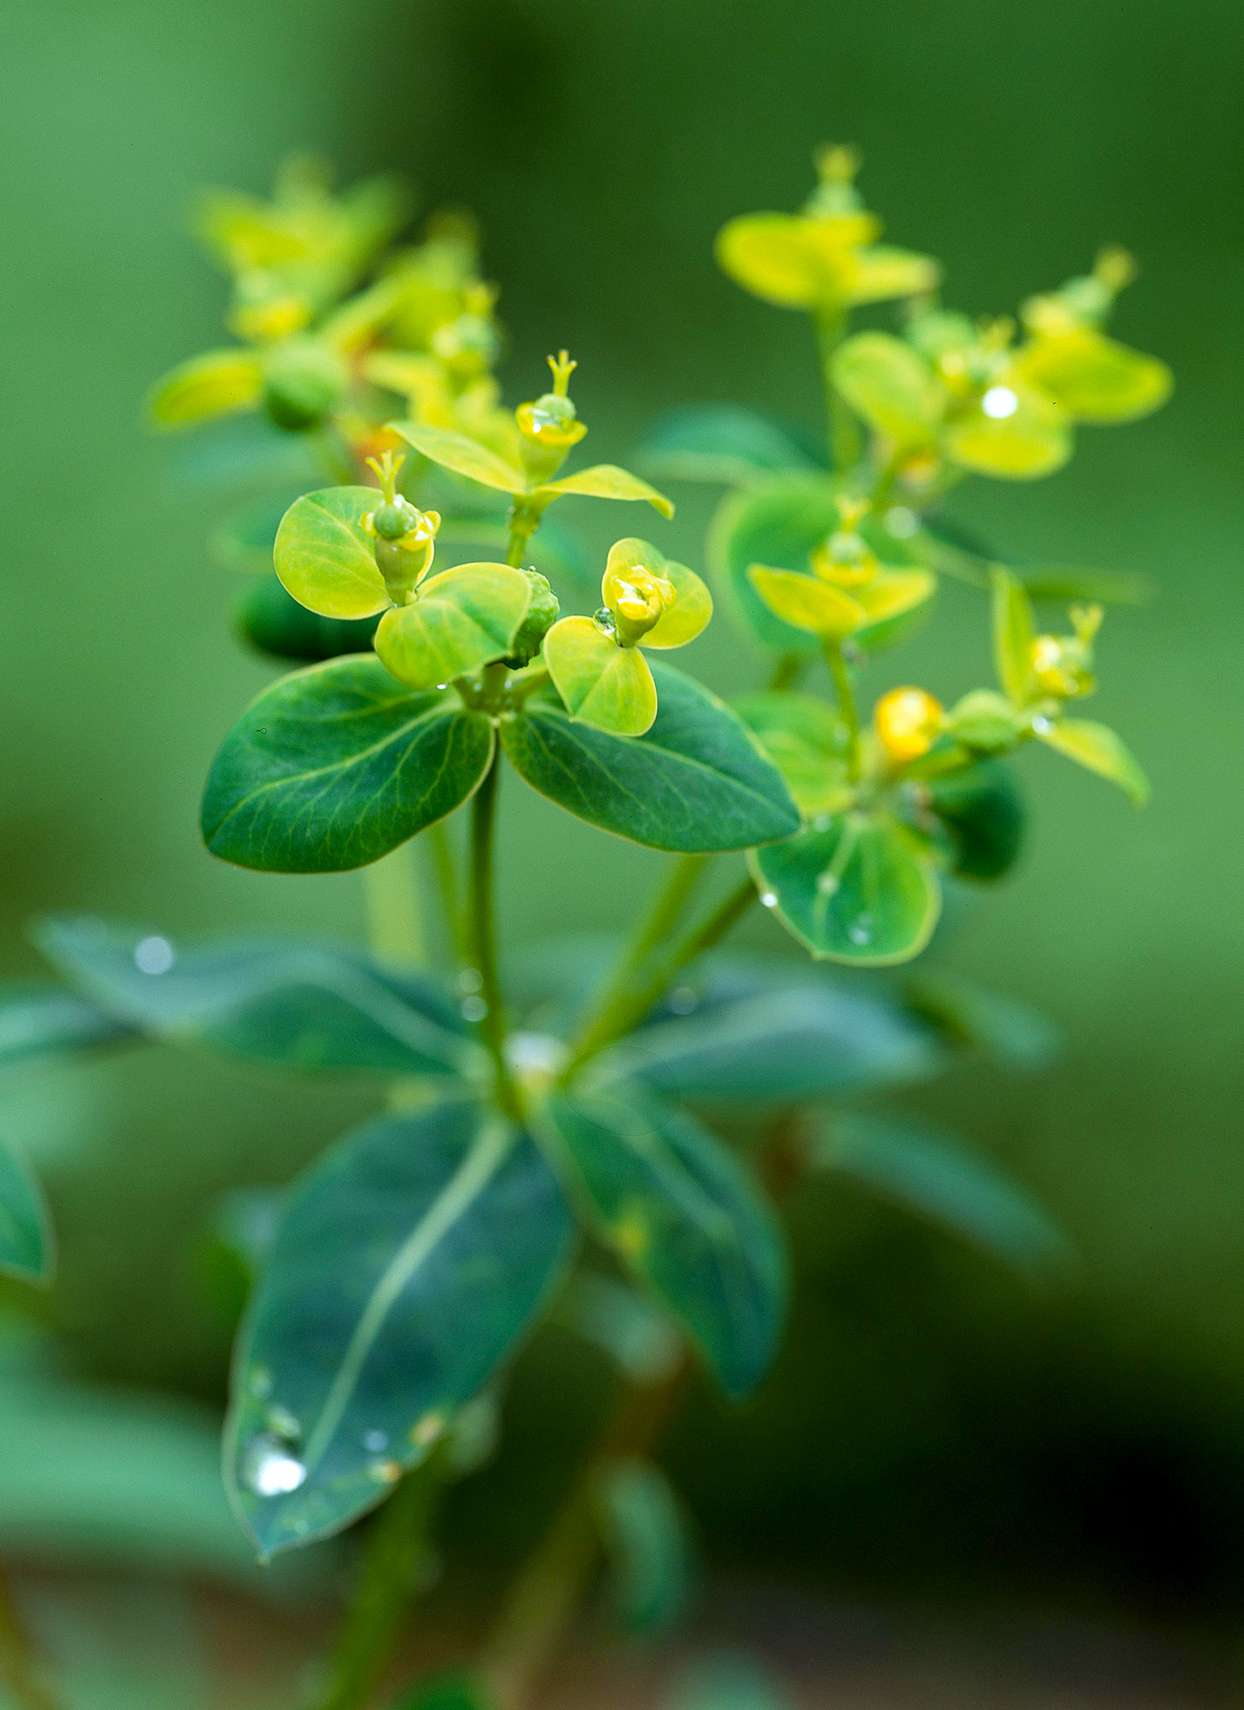 Euphorbia Excalibur spurge